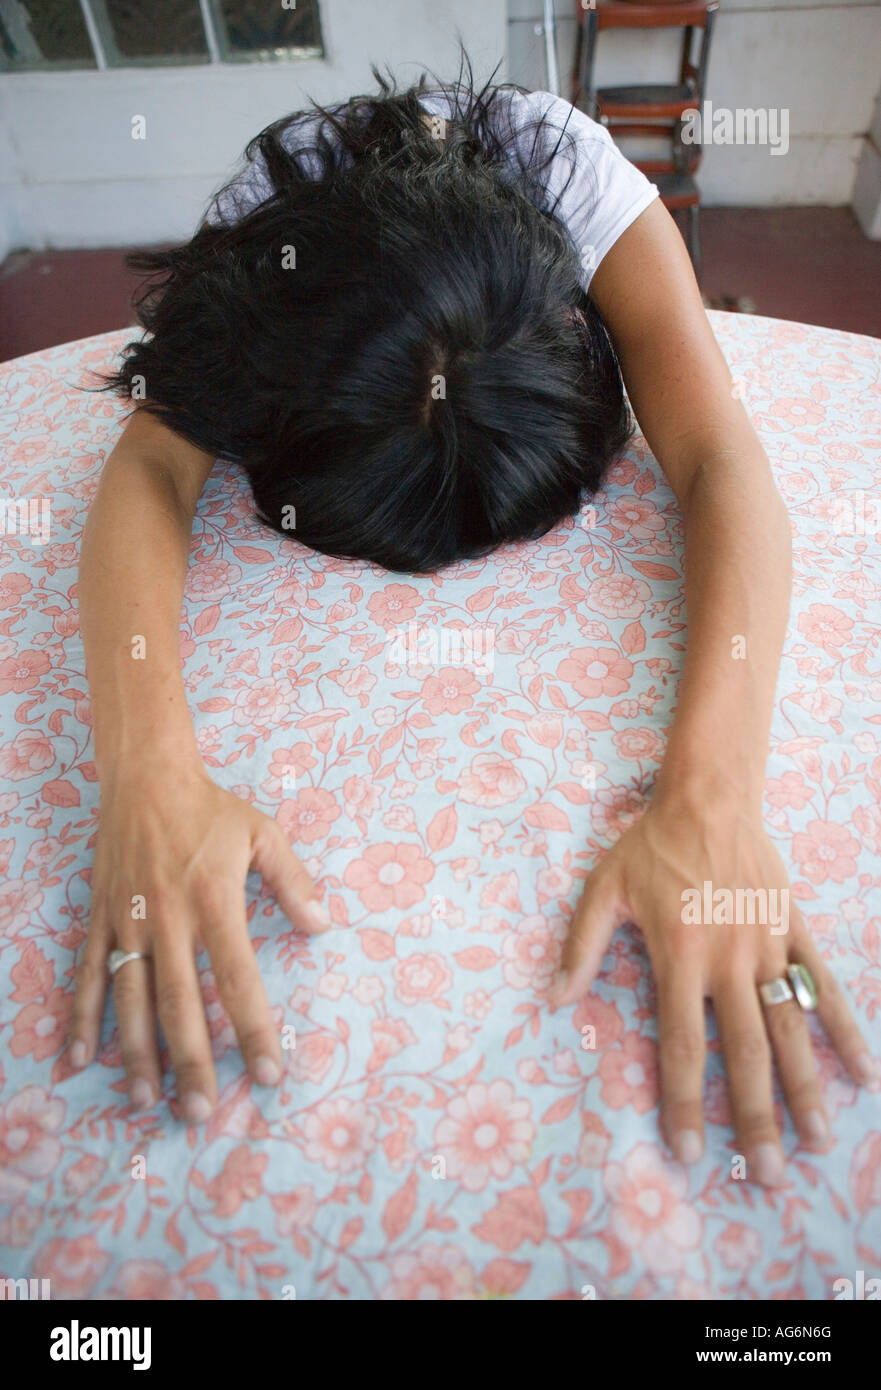 Femme avec la tête en bas et les bras tendus sur la table Banque D'Images